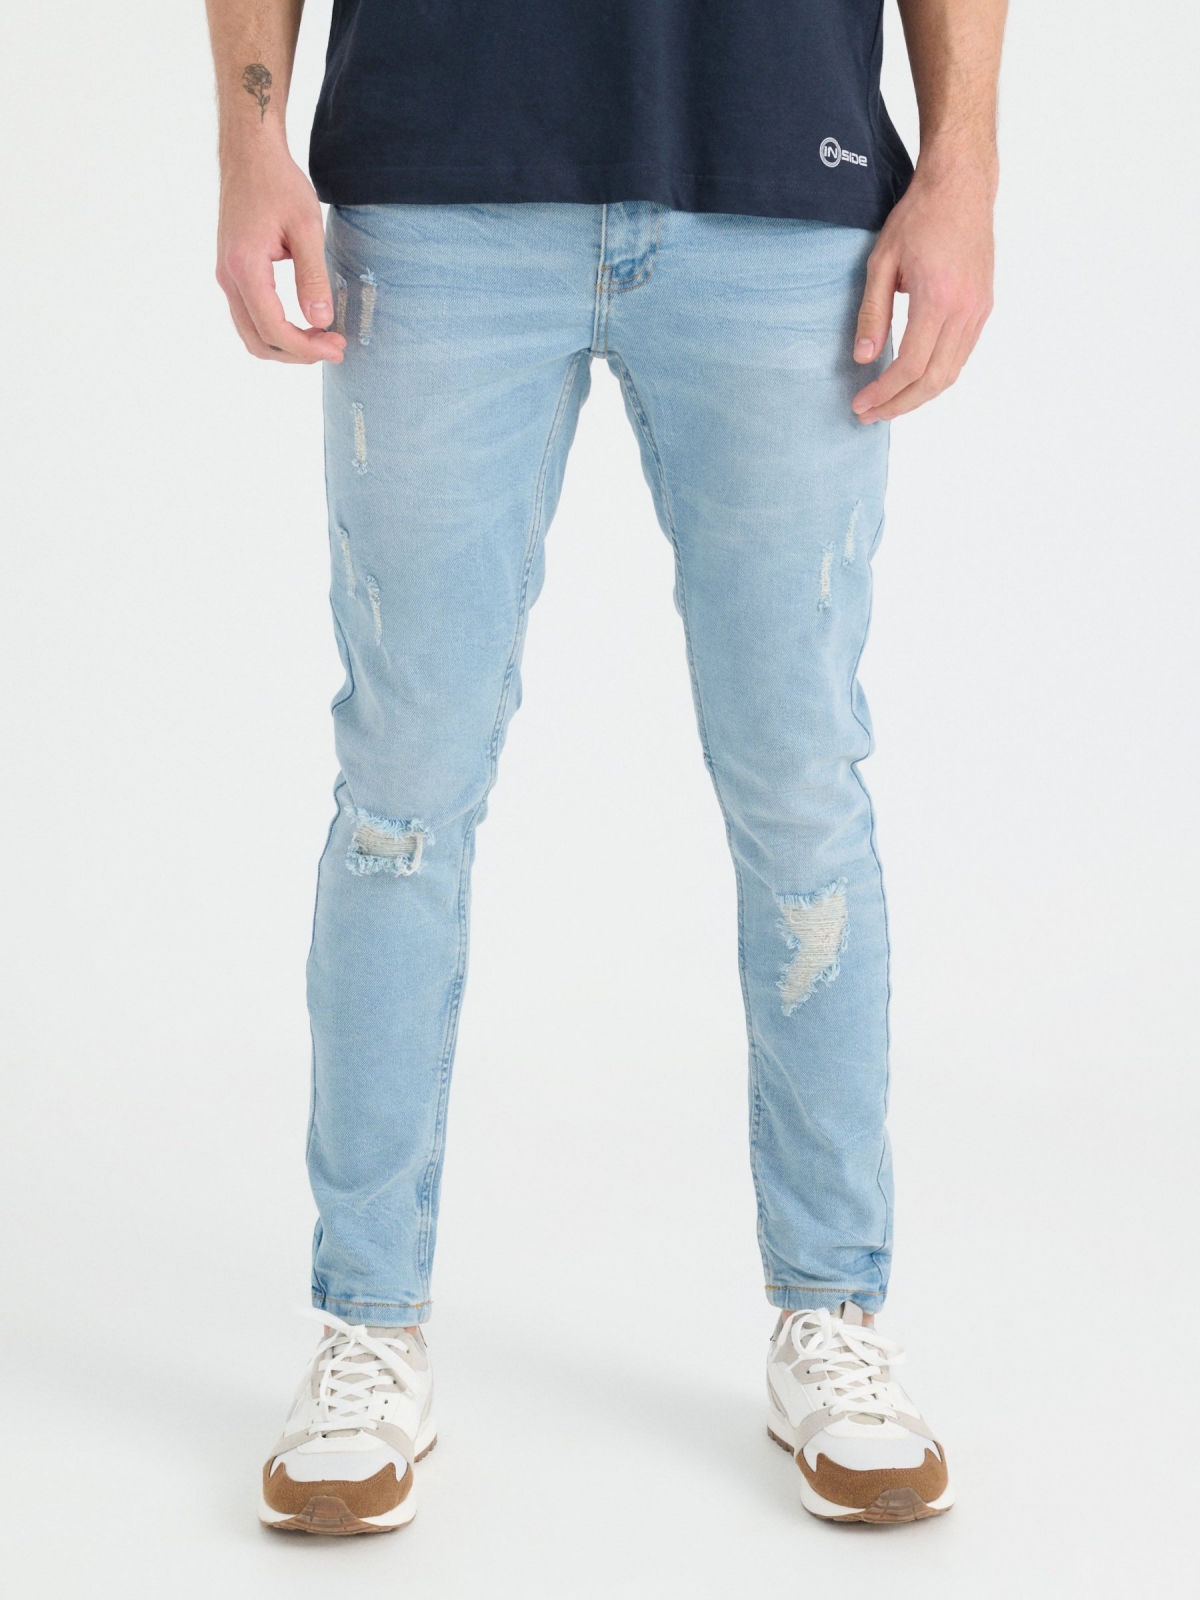 Jeans super slim lavado e rasgado azul claro vista meia frontal